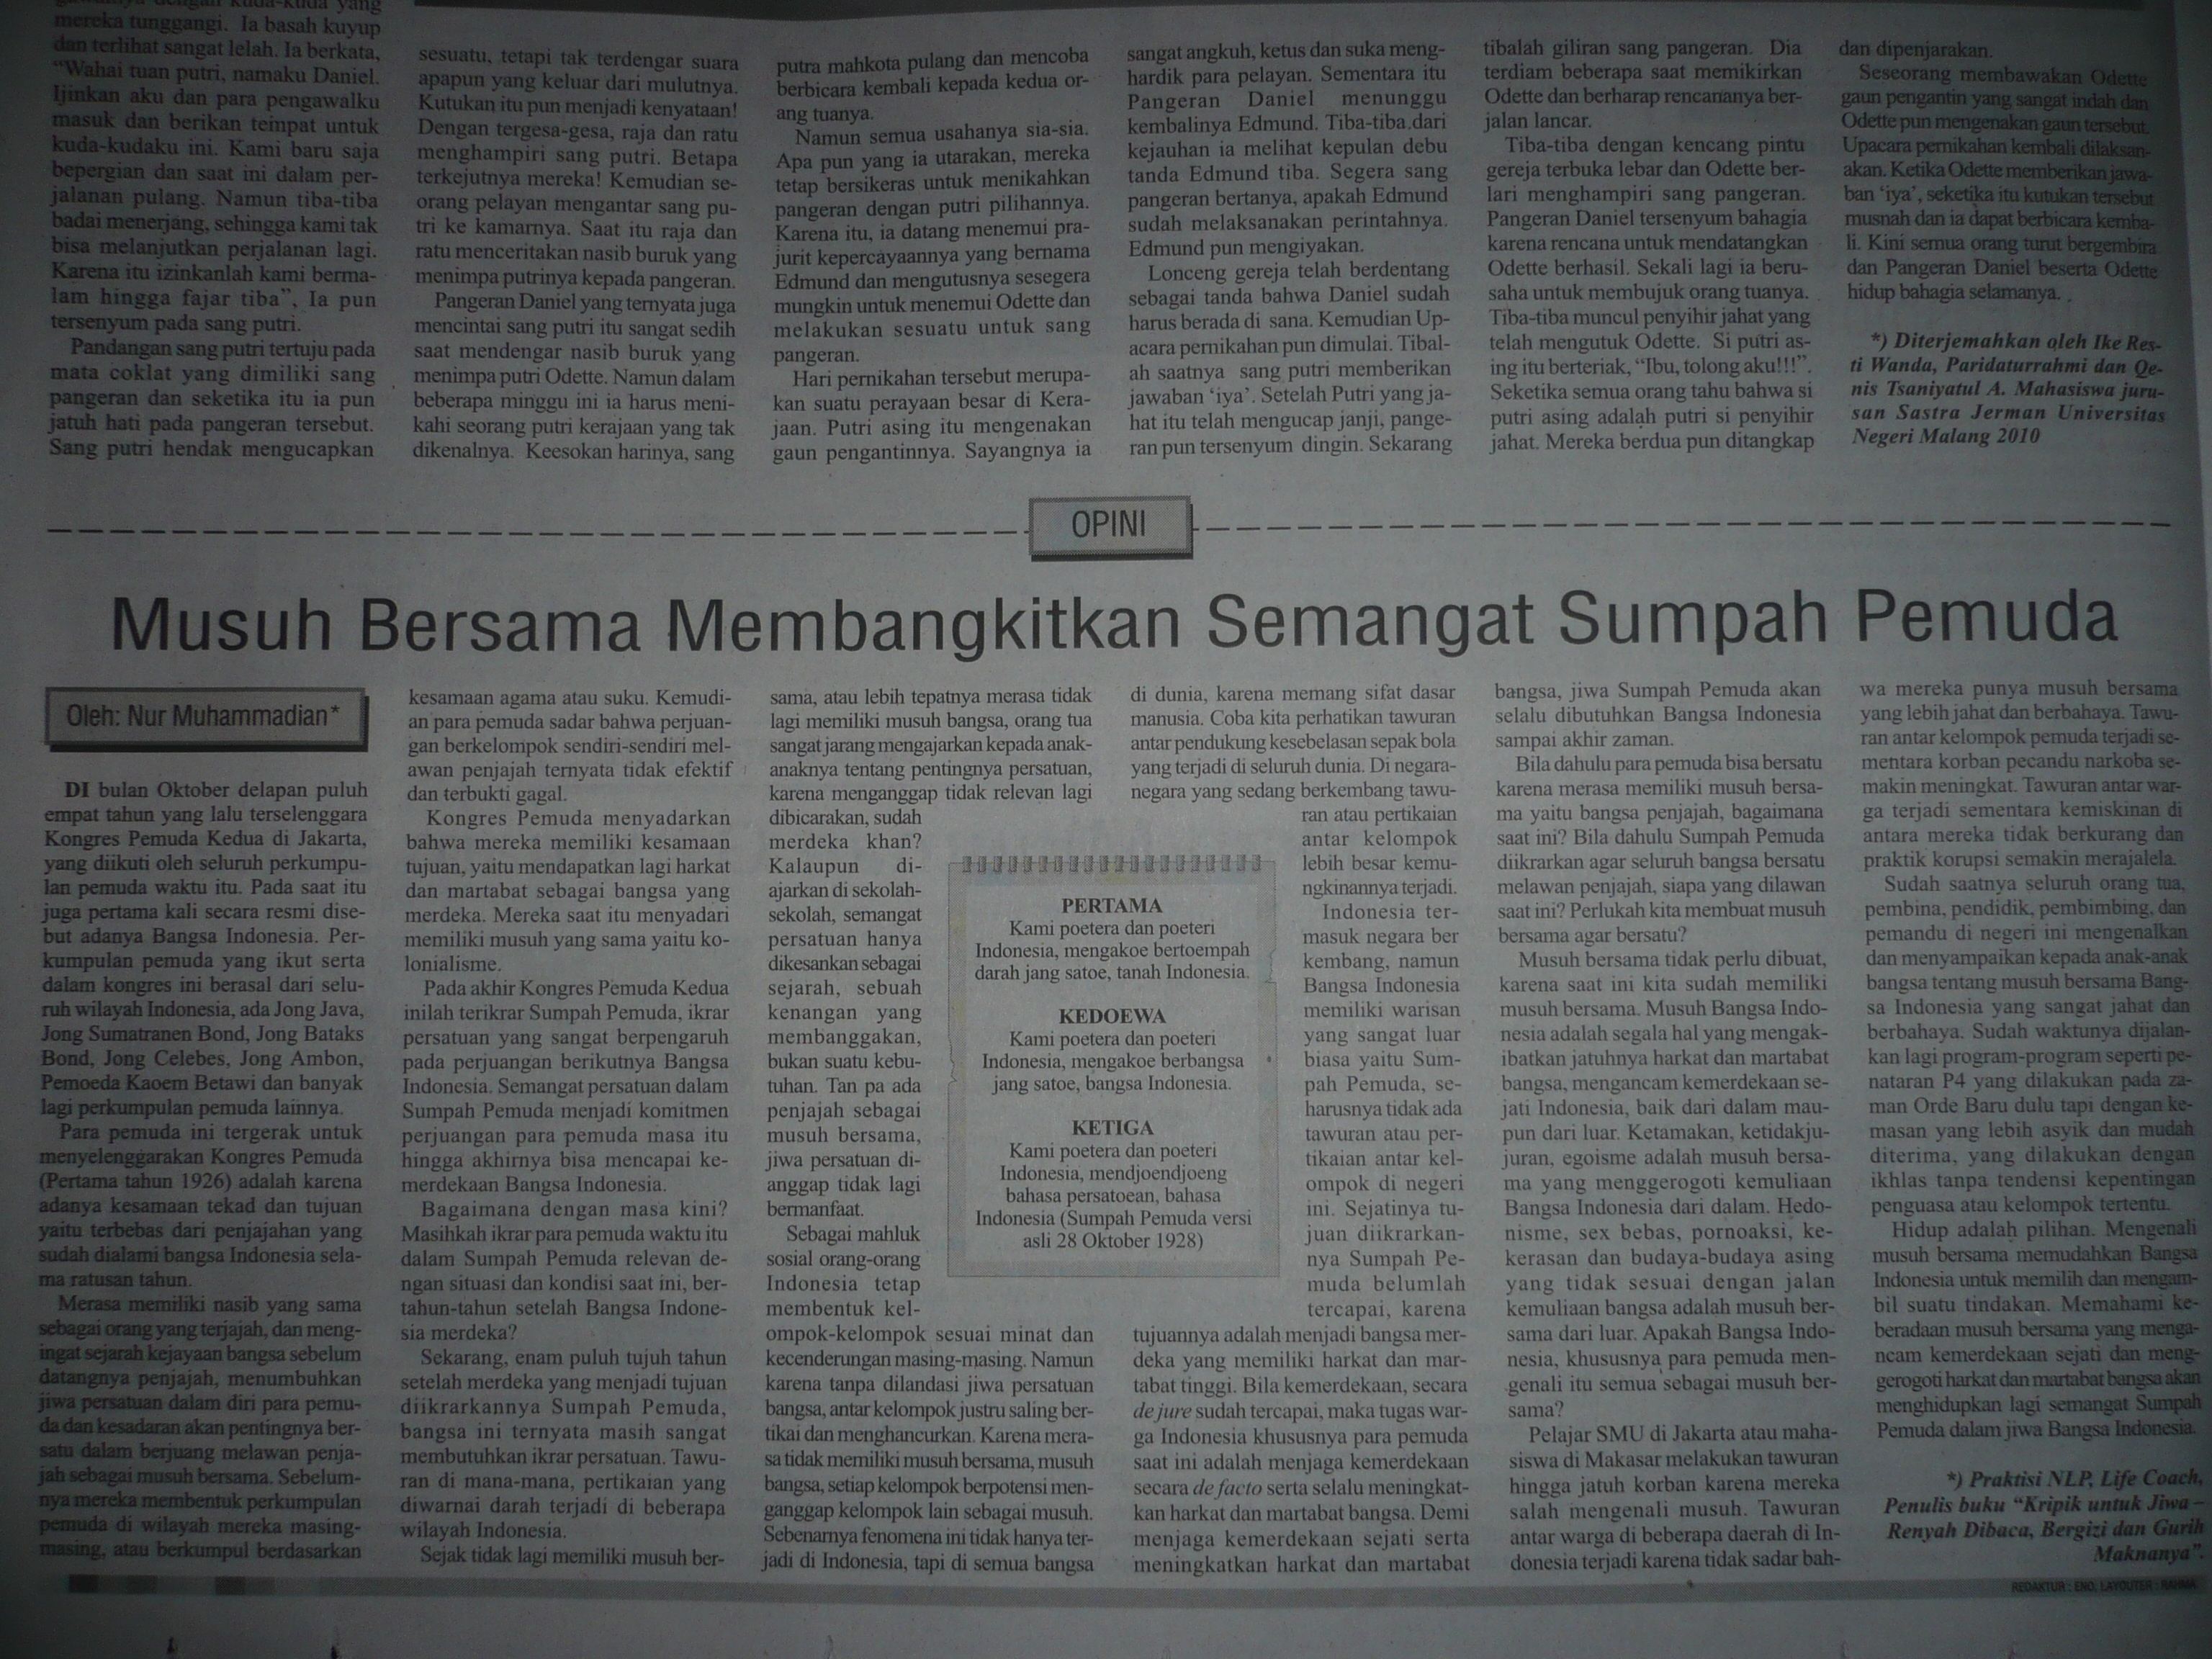 [Kliping, Malang Post 28 Oktober 2012] Musuh Bersama 